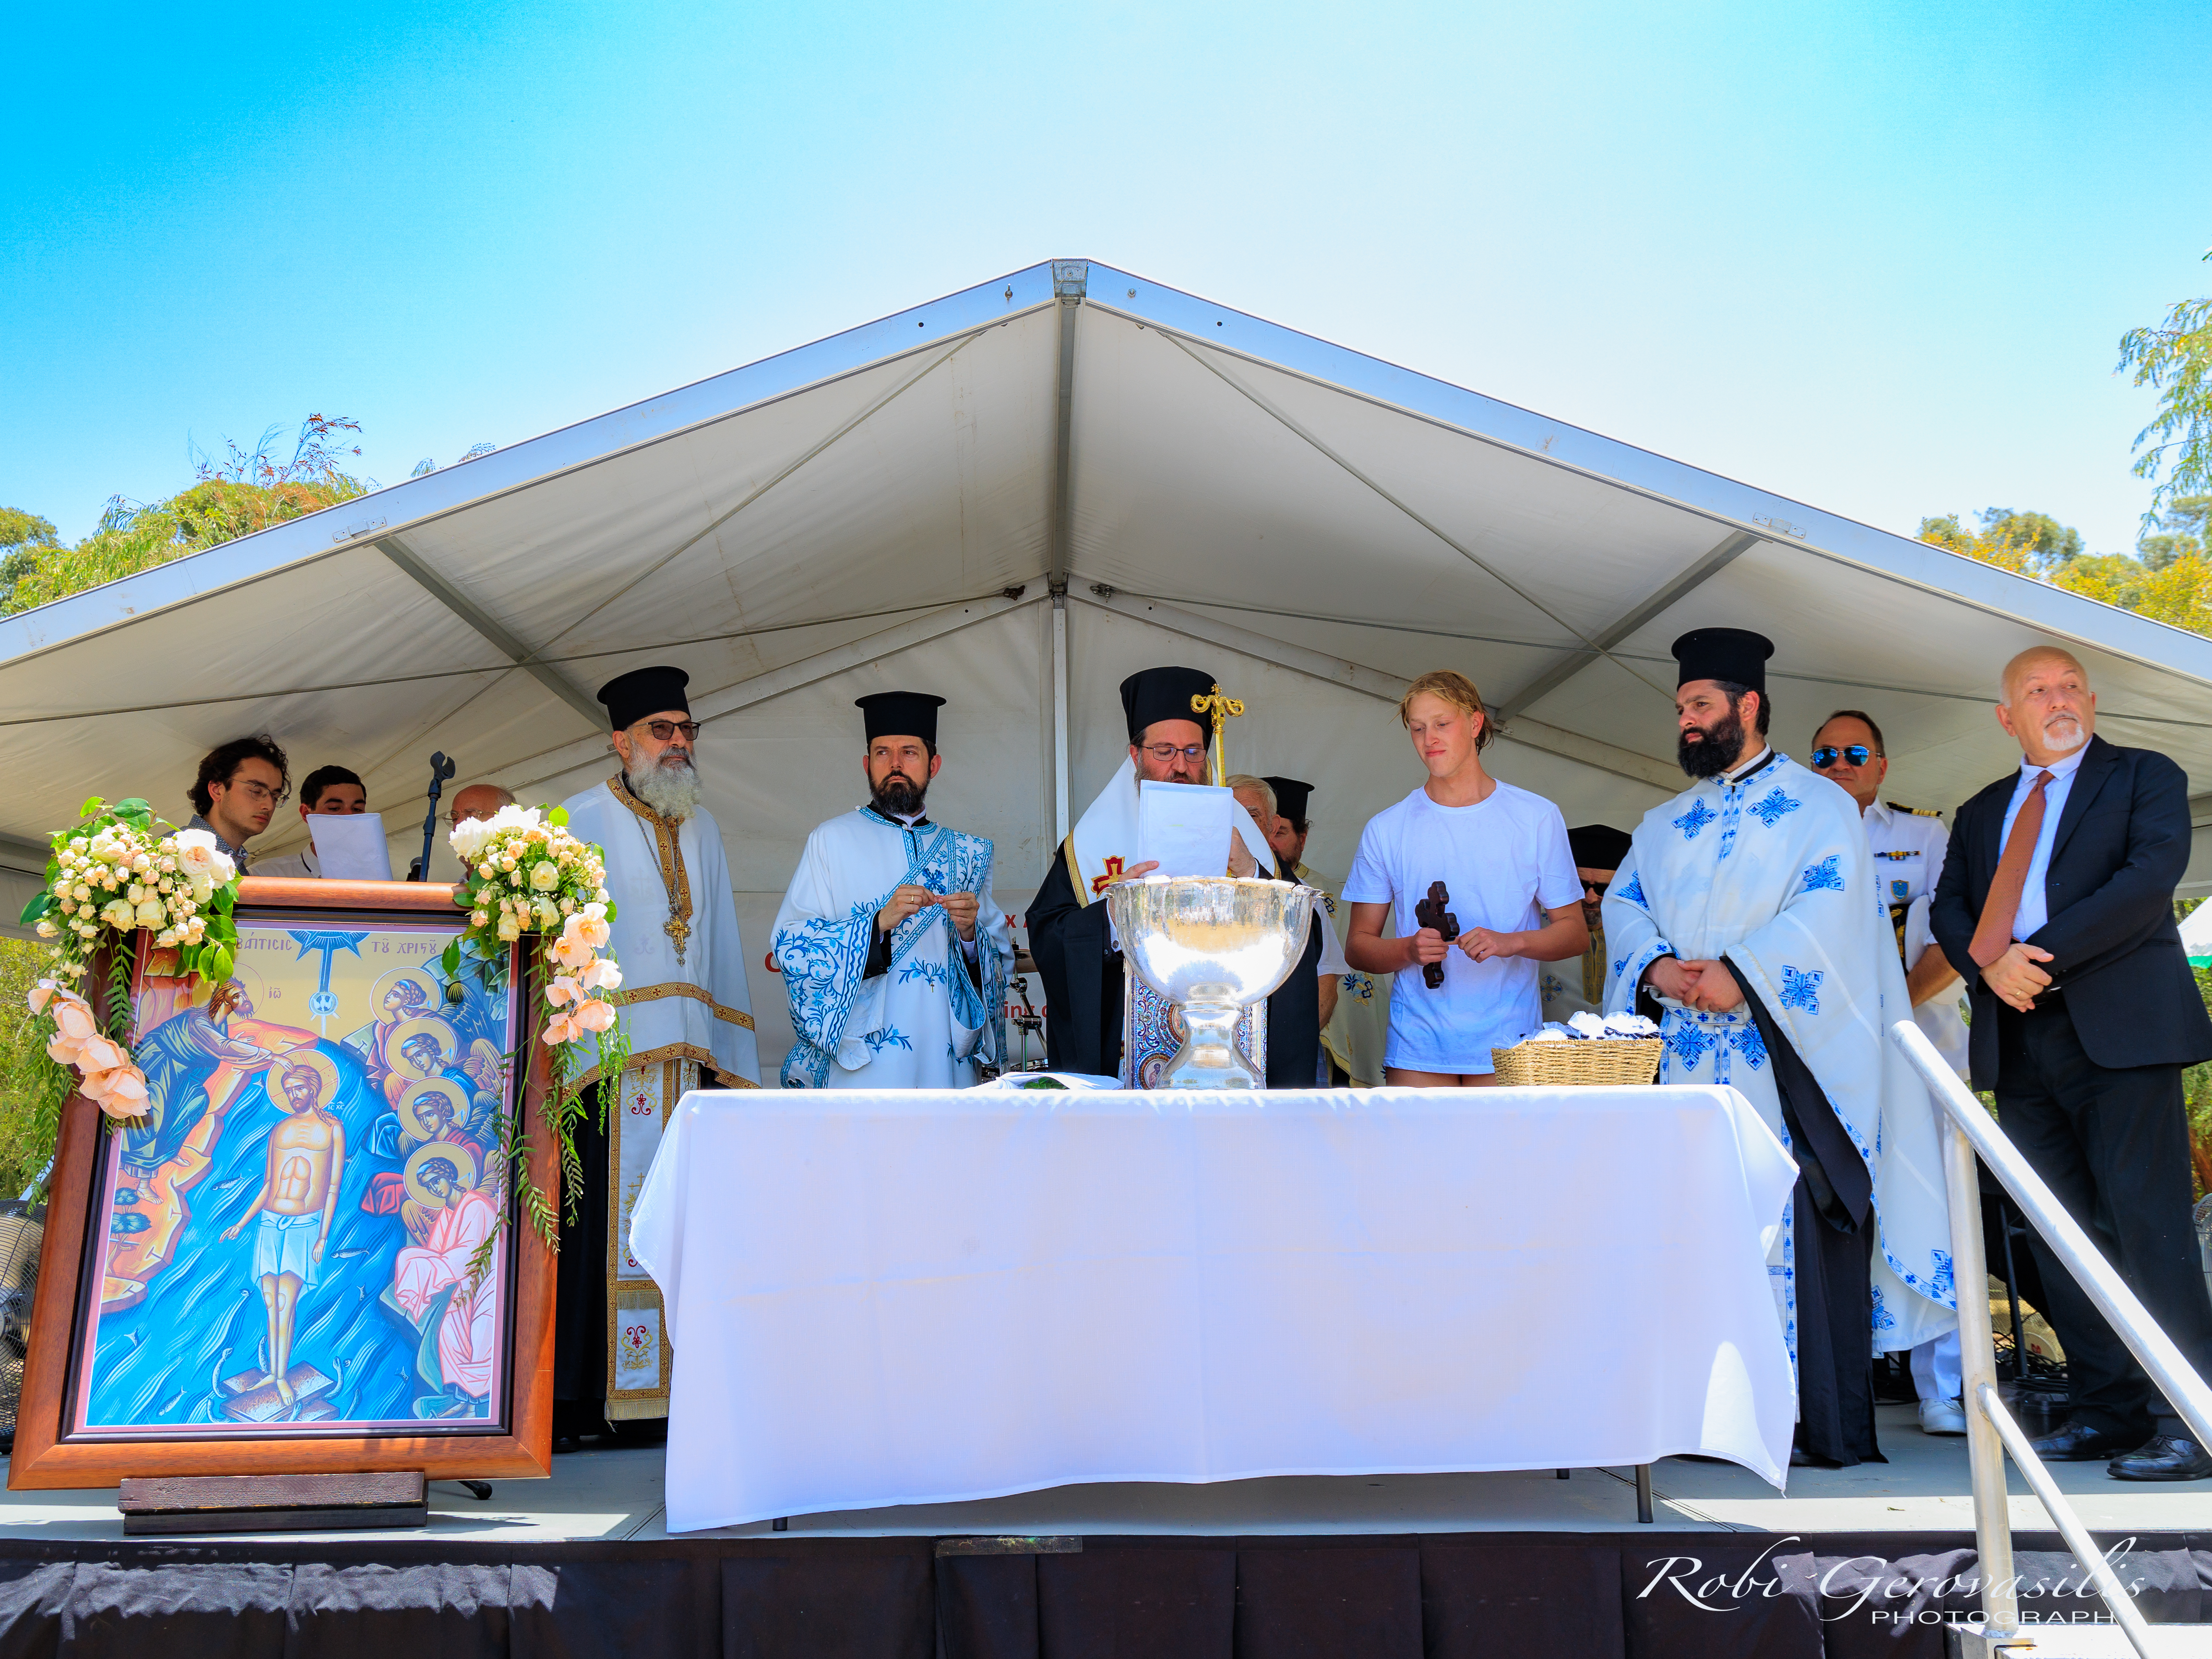 Perth: Matilda Bay Epiphany Celebrations 